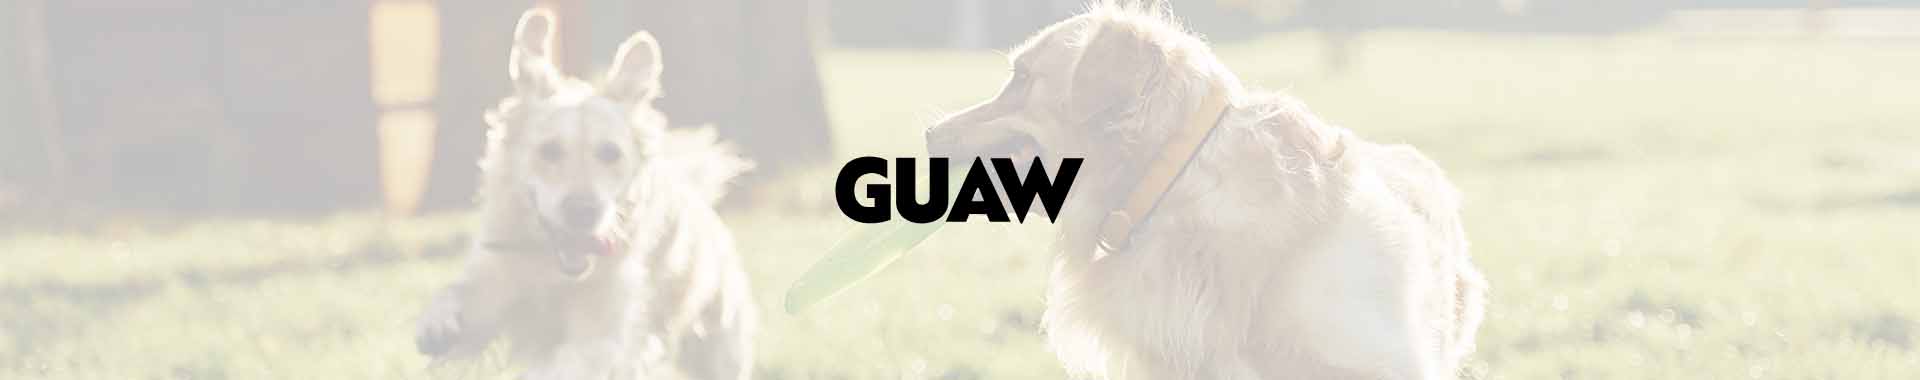 Mundo-Guaw-Noticias